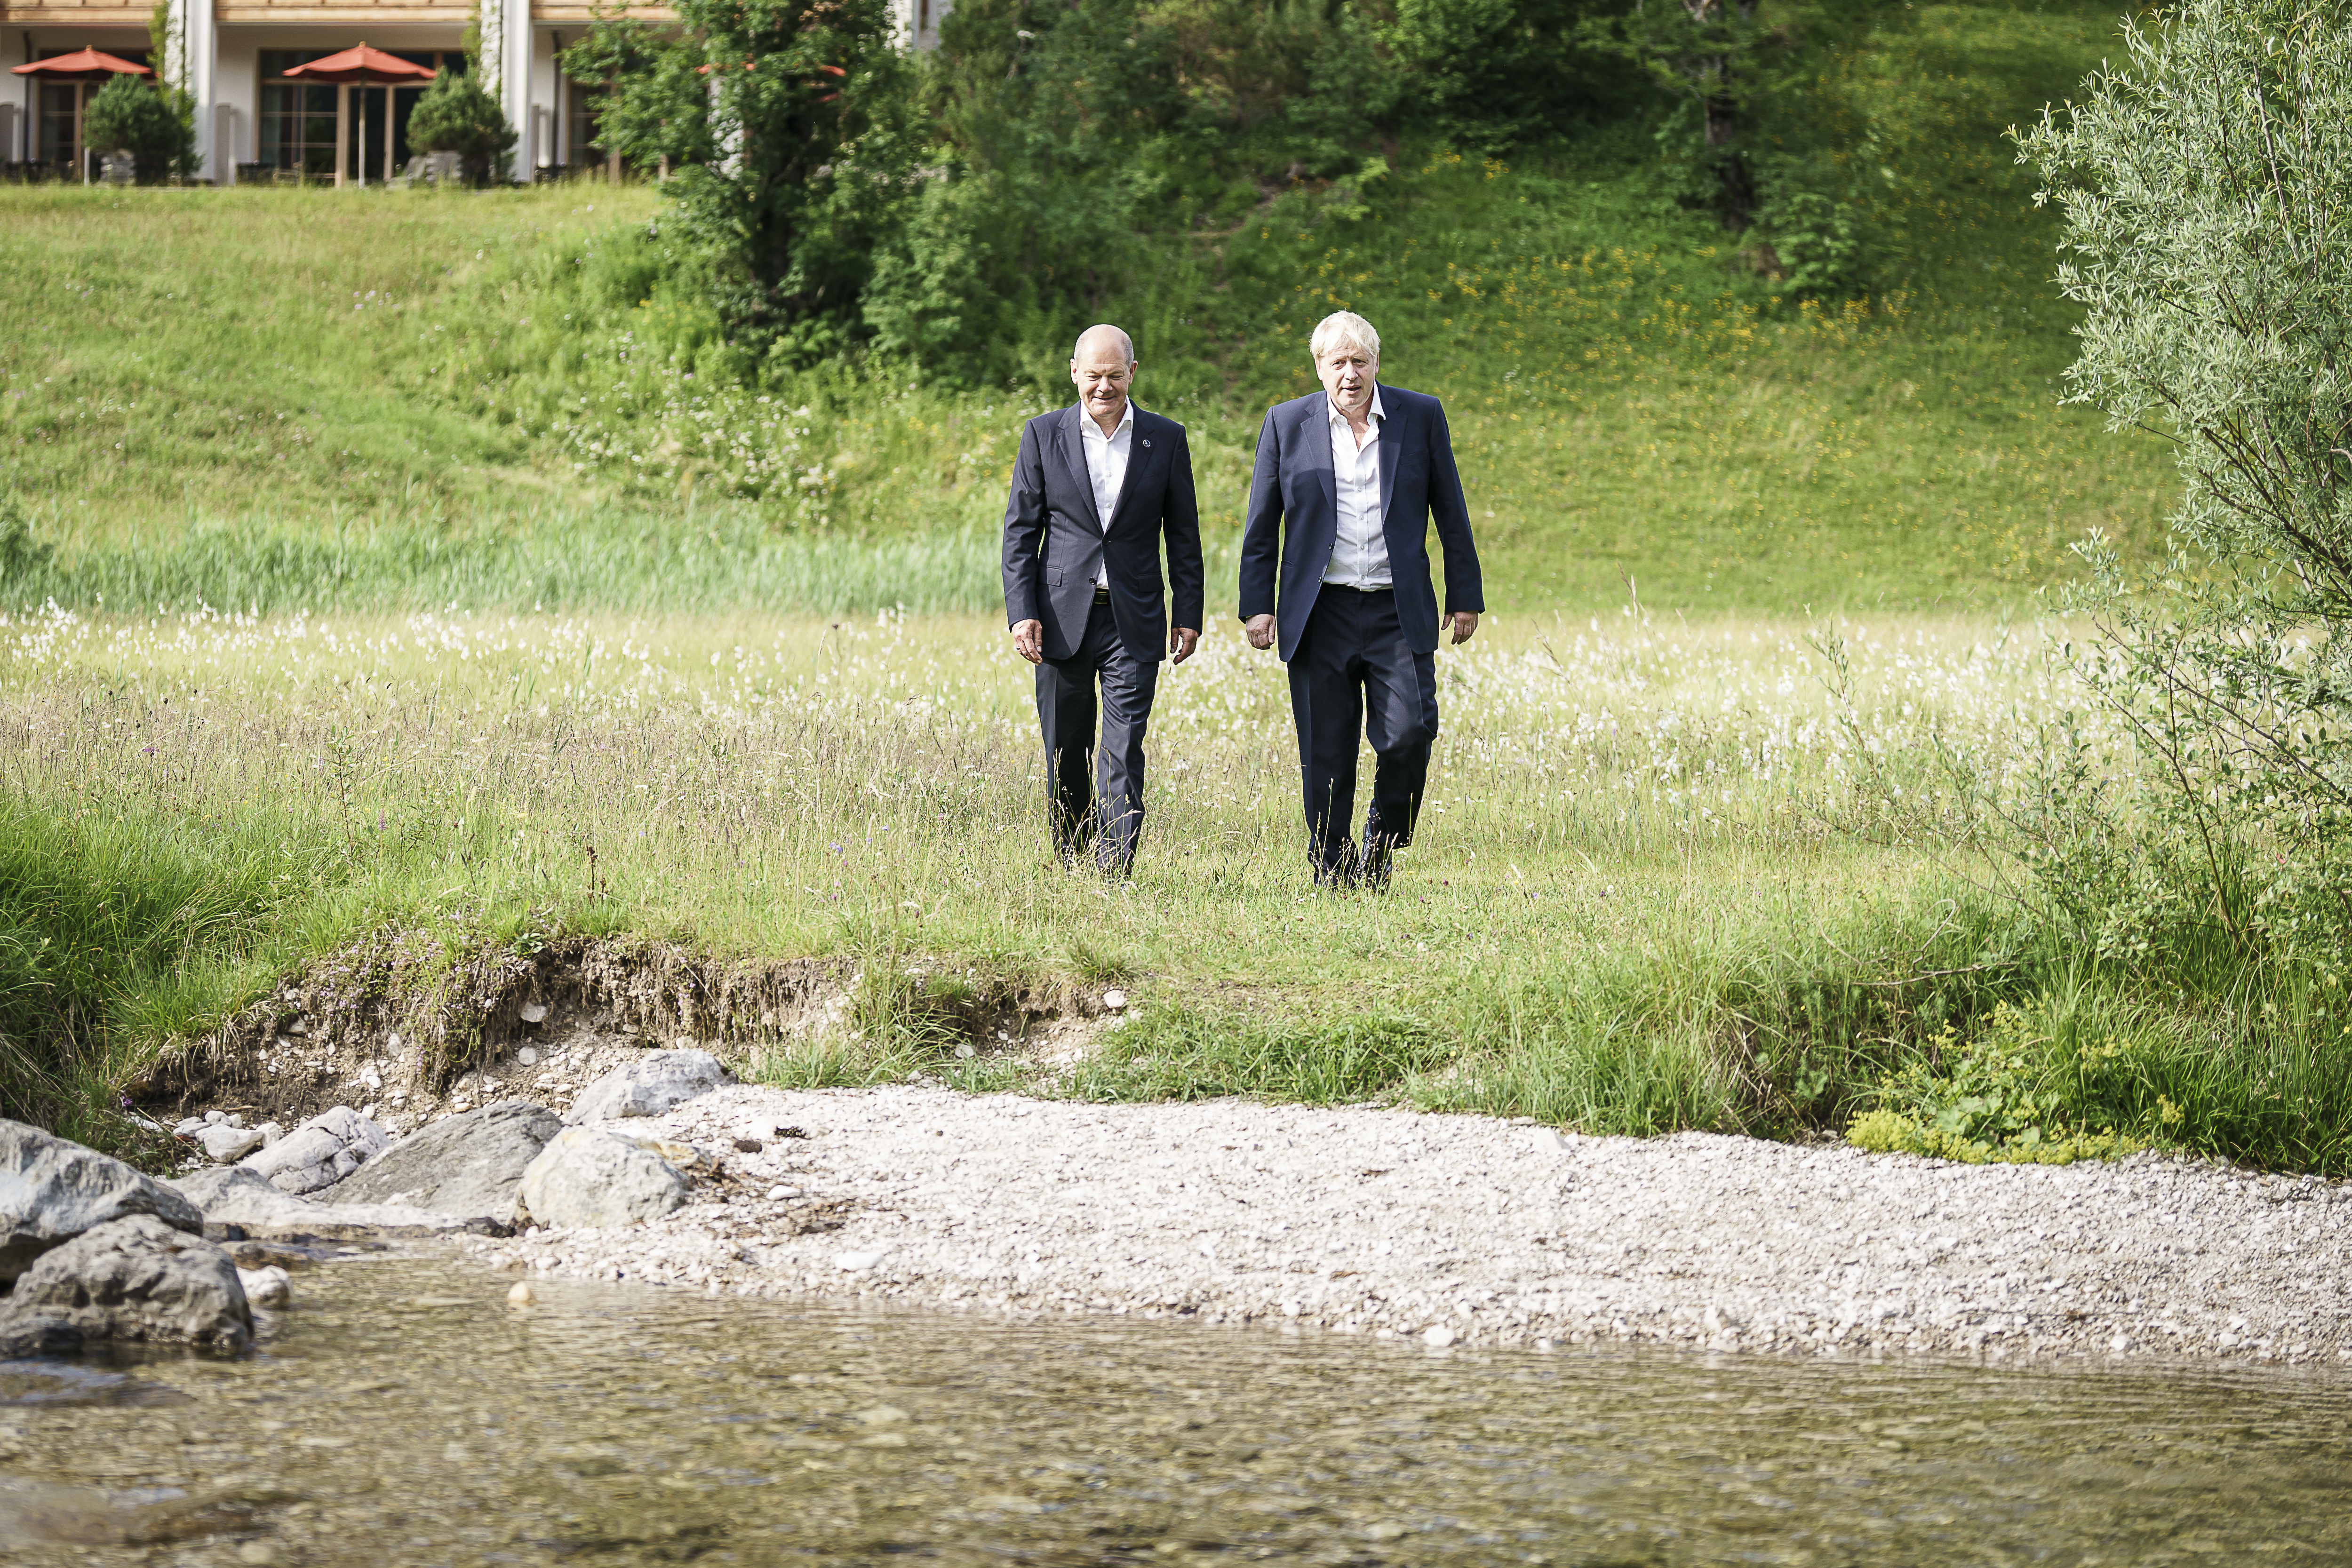 Bilaterales Gespräch zwischen Bundeskanzler Olaf Scholz dem britischen Premierminister Boris Johnson während eines Spaziergangs.